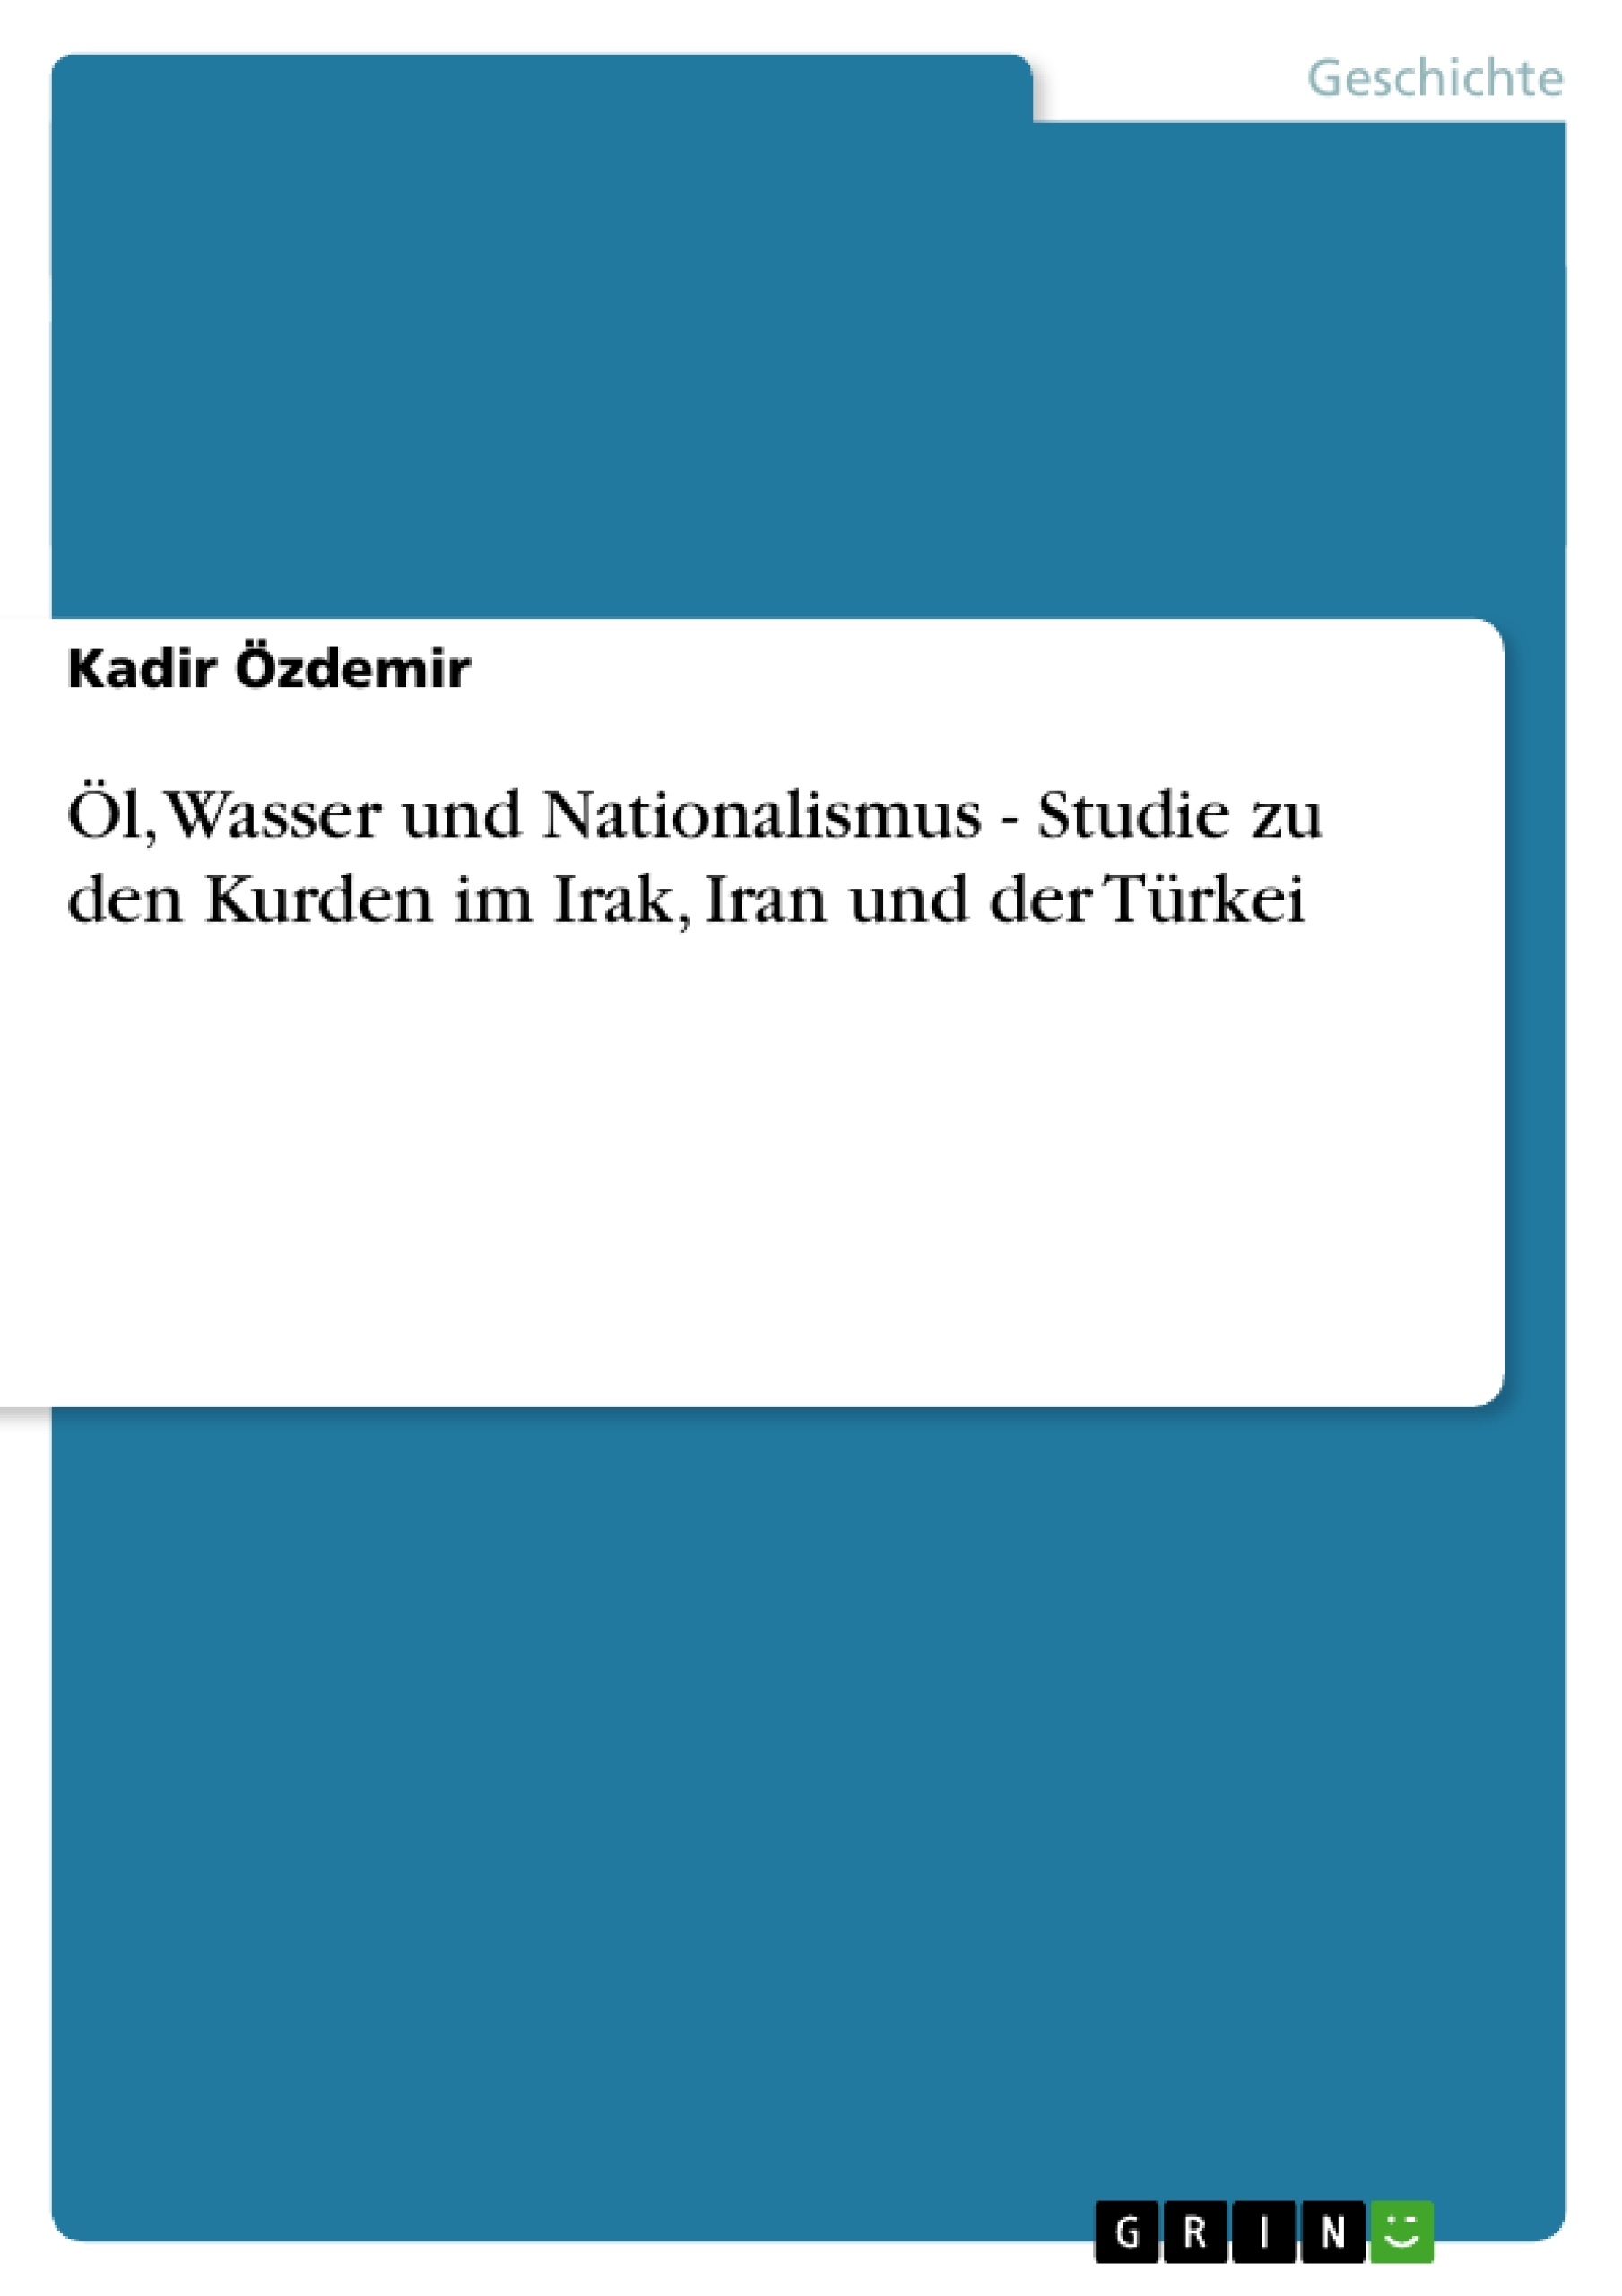 Título: Öl, Wasser und Nationalismus - Studie zu den Kurden im Irak, Iran und der Türkei